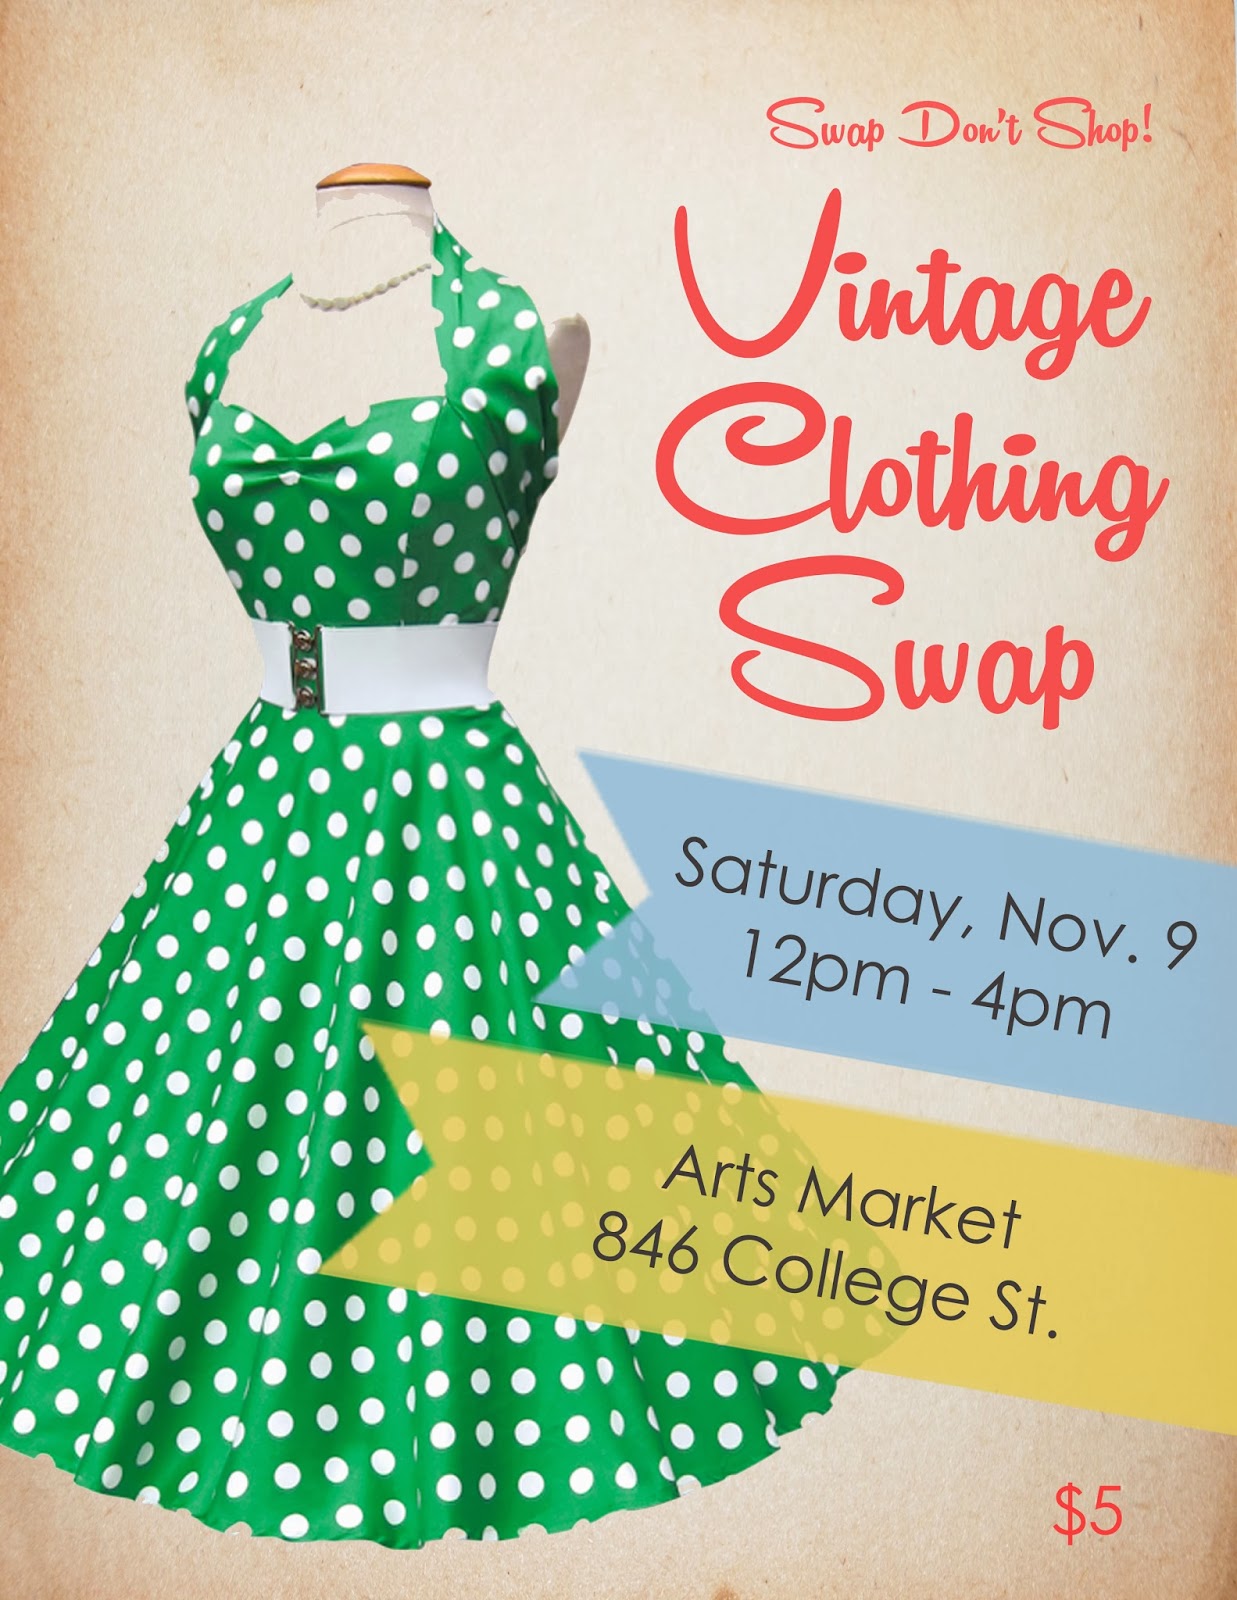 Swap Don't Shop!: Vintage Clothing Swap!